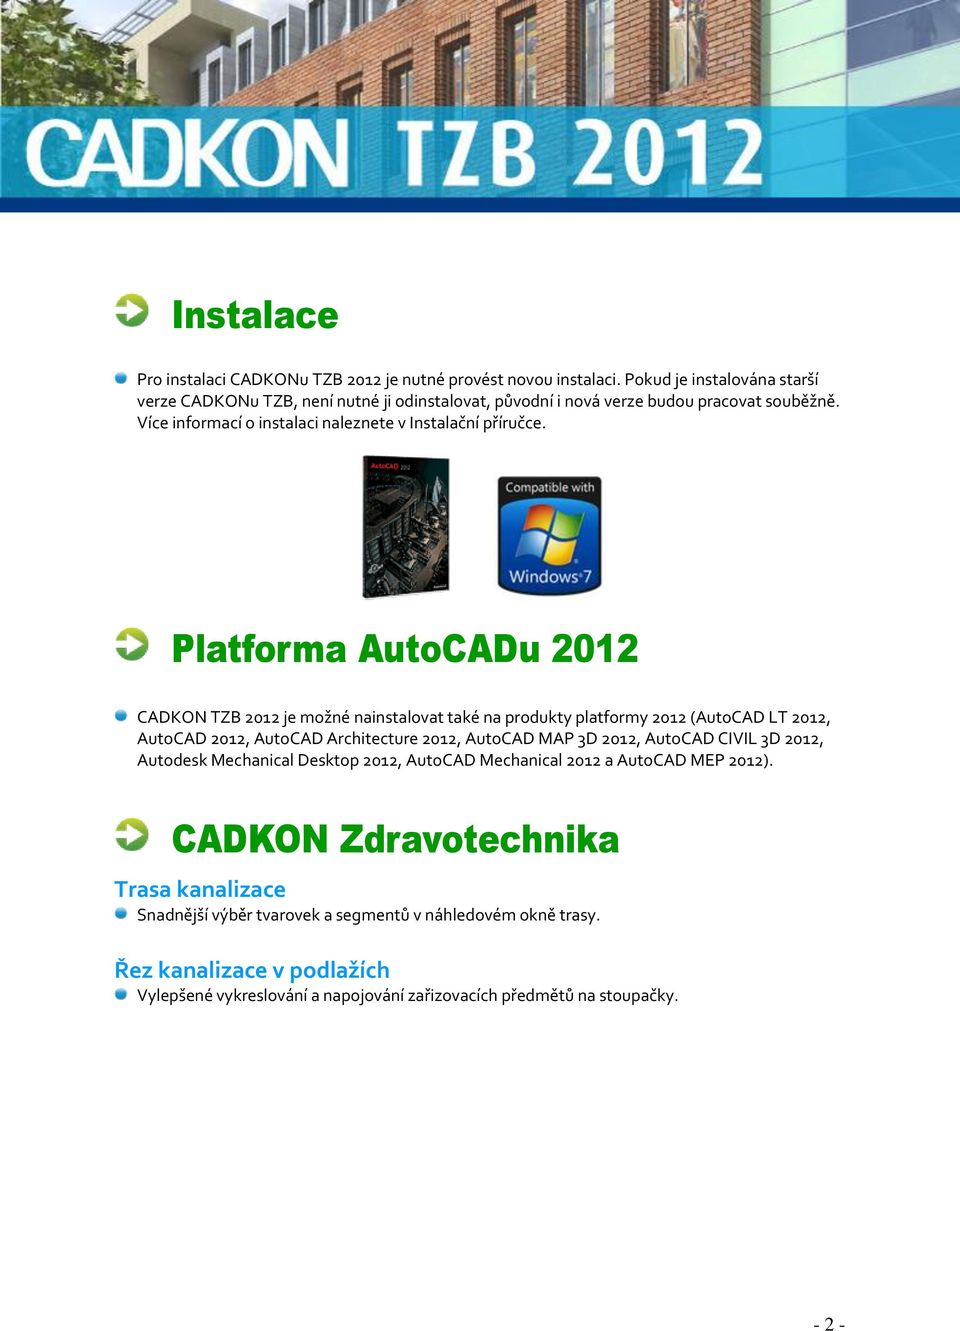 Platforma AutoCADu 2012 CADKON TZB 2012 je možné nainstalovat také na produkty platformy 2012 (AutoCAD LT 2012, AutoCAD 2012, AutoCAD Architecture 2012, AutoCAD MAP 3D 2012, AutoCAD